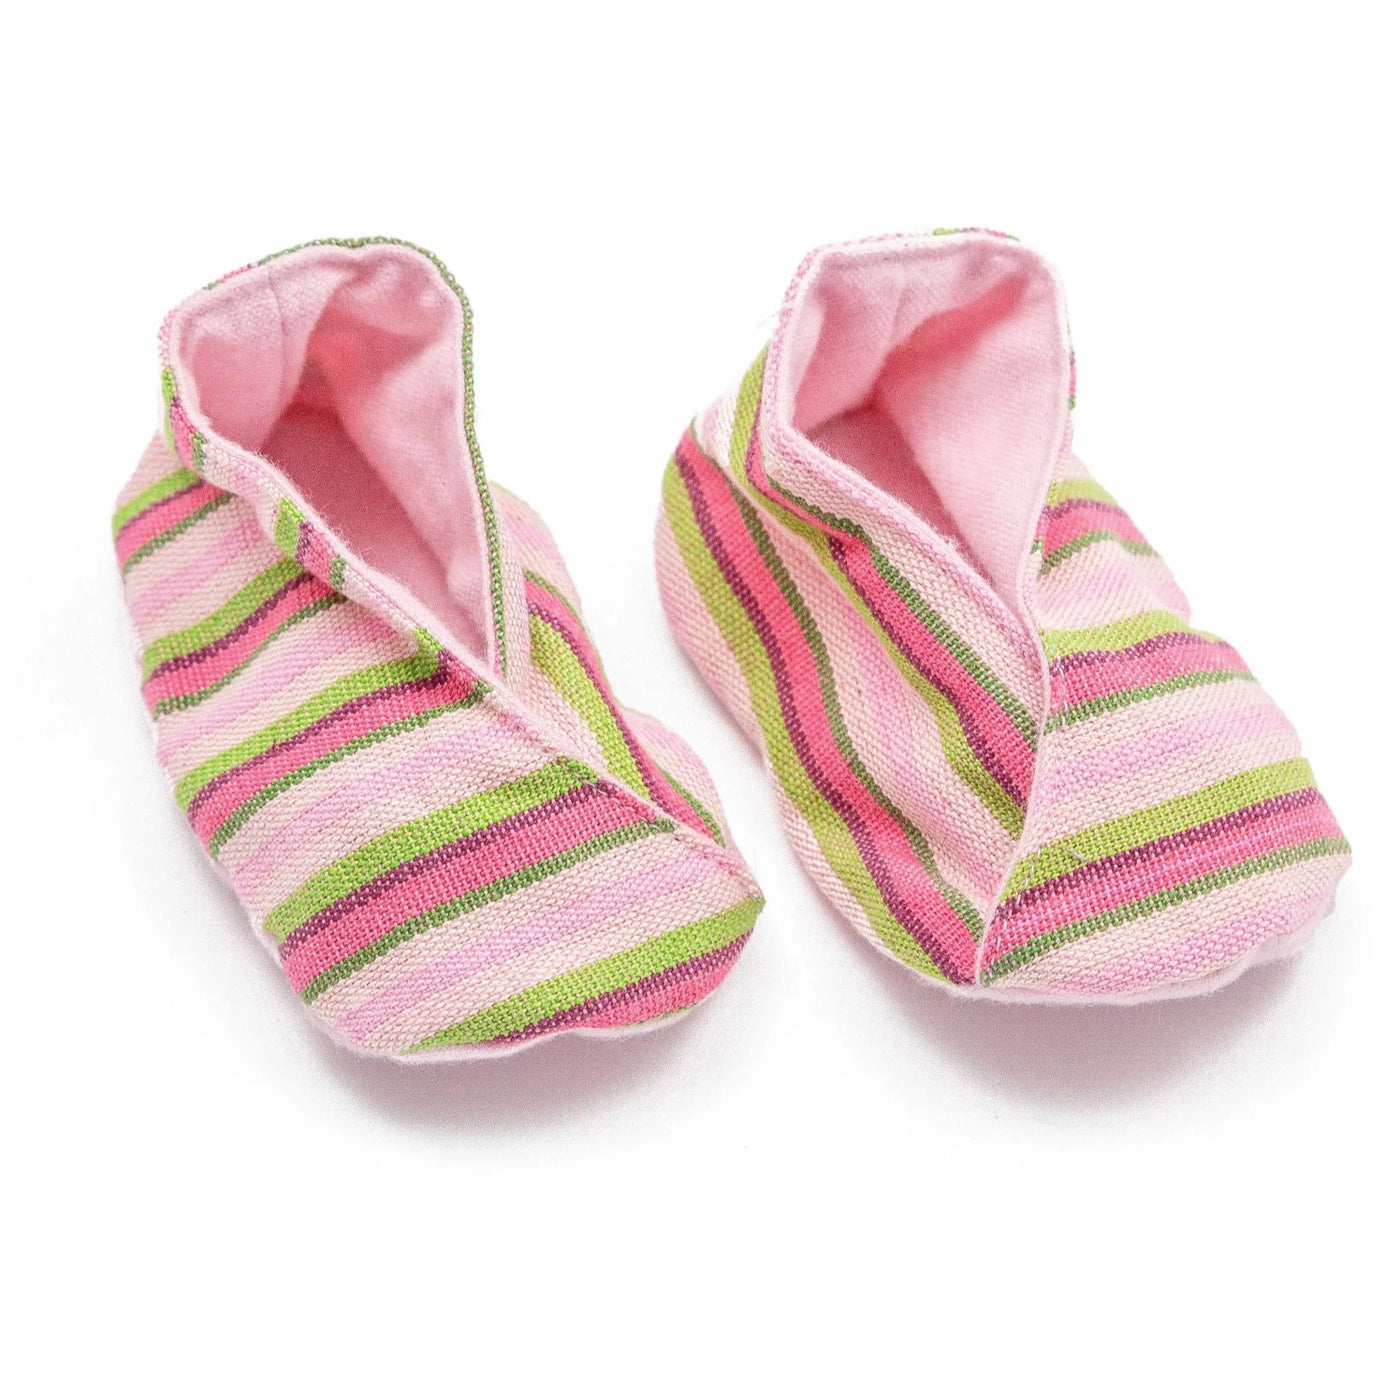 Handwoven baby booties in pink. 